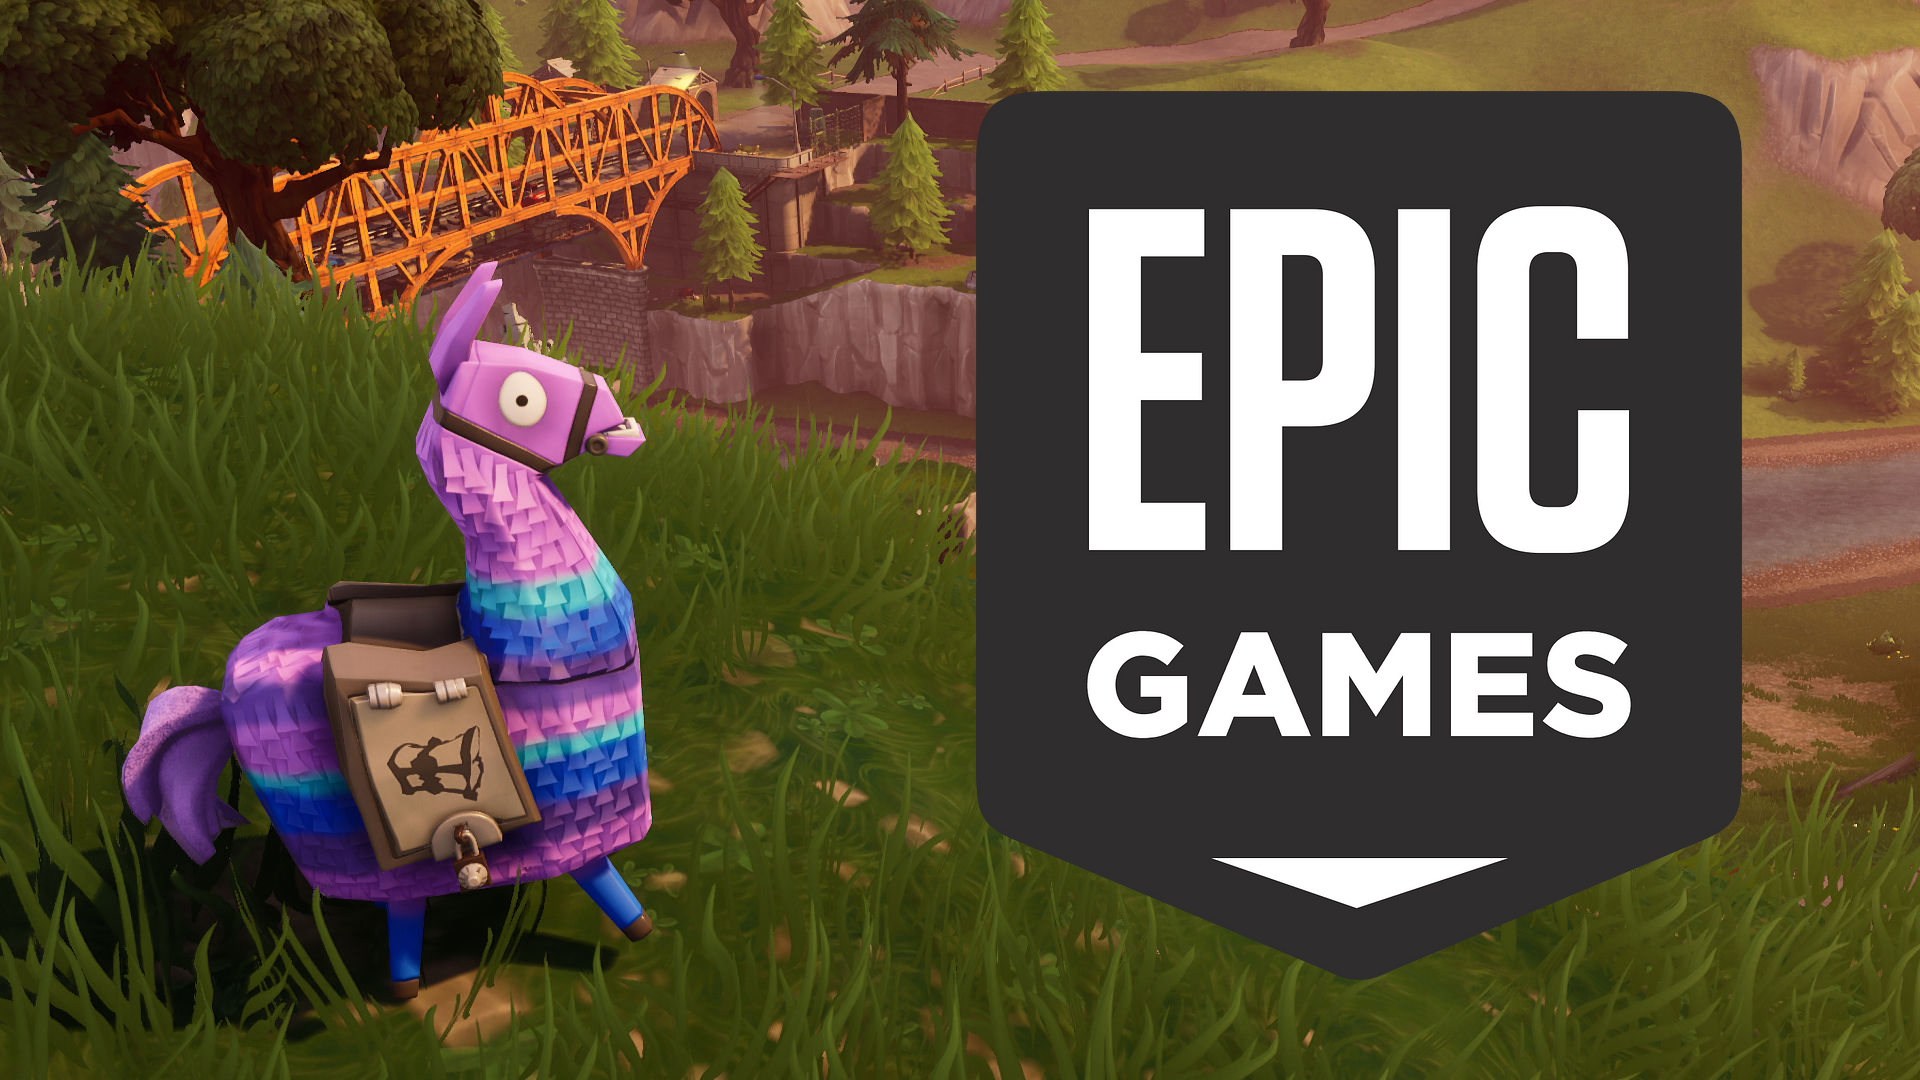 Pinata w kształcie lamy z plecakiem stoi na tle krajobrazu z gry, po prawej stronie widoczne jest logo "EPIC GAMES", w tle gra Fortnite